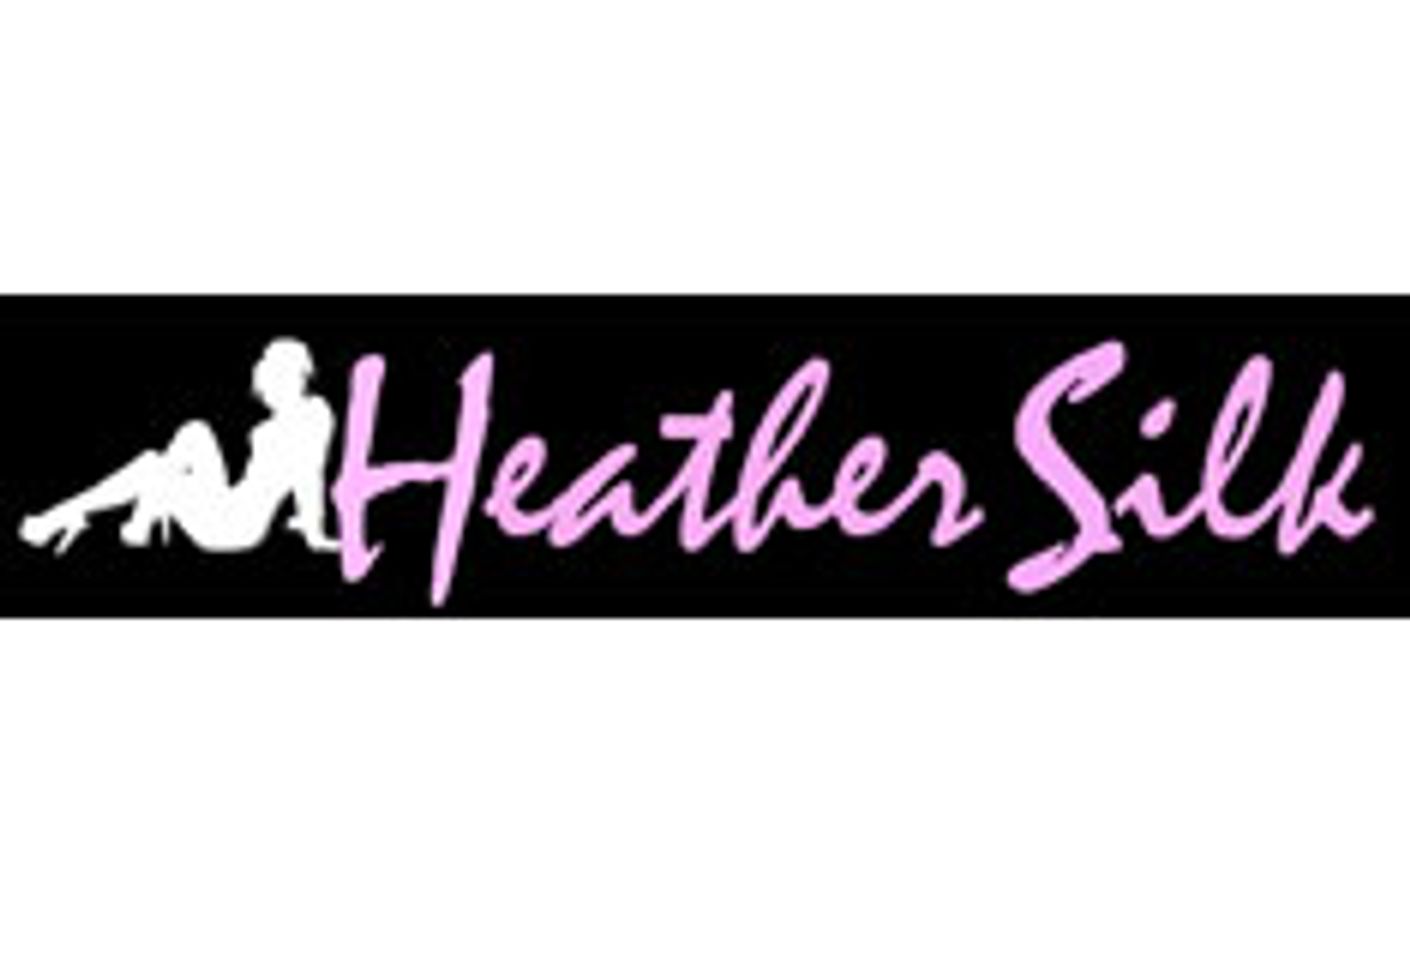 UrgeCash Launches HeatherSilk.com in True HD